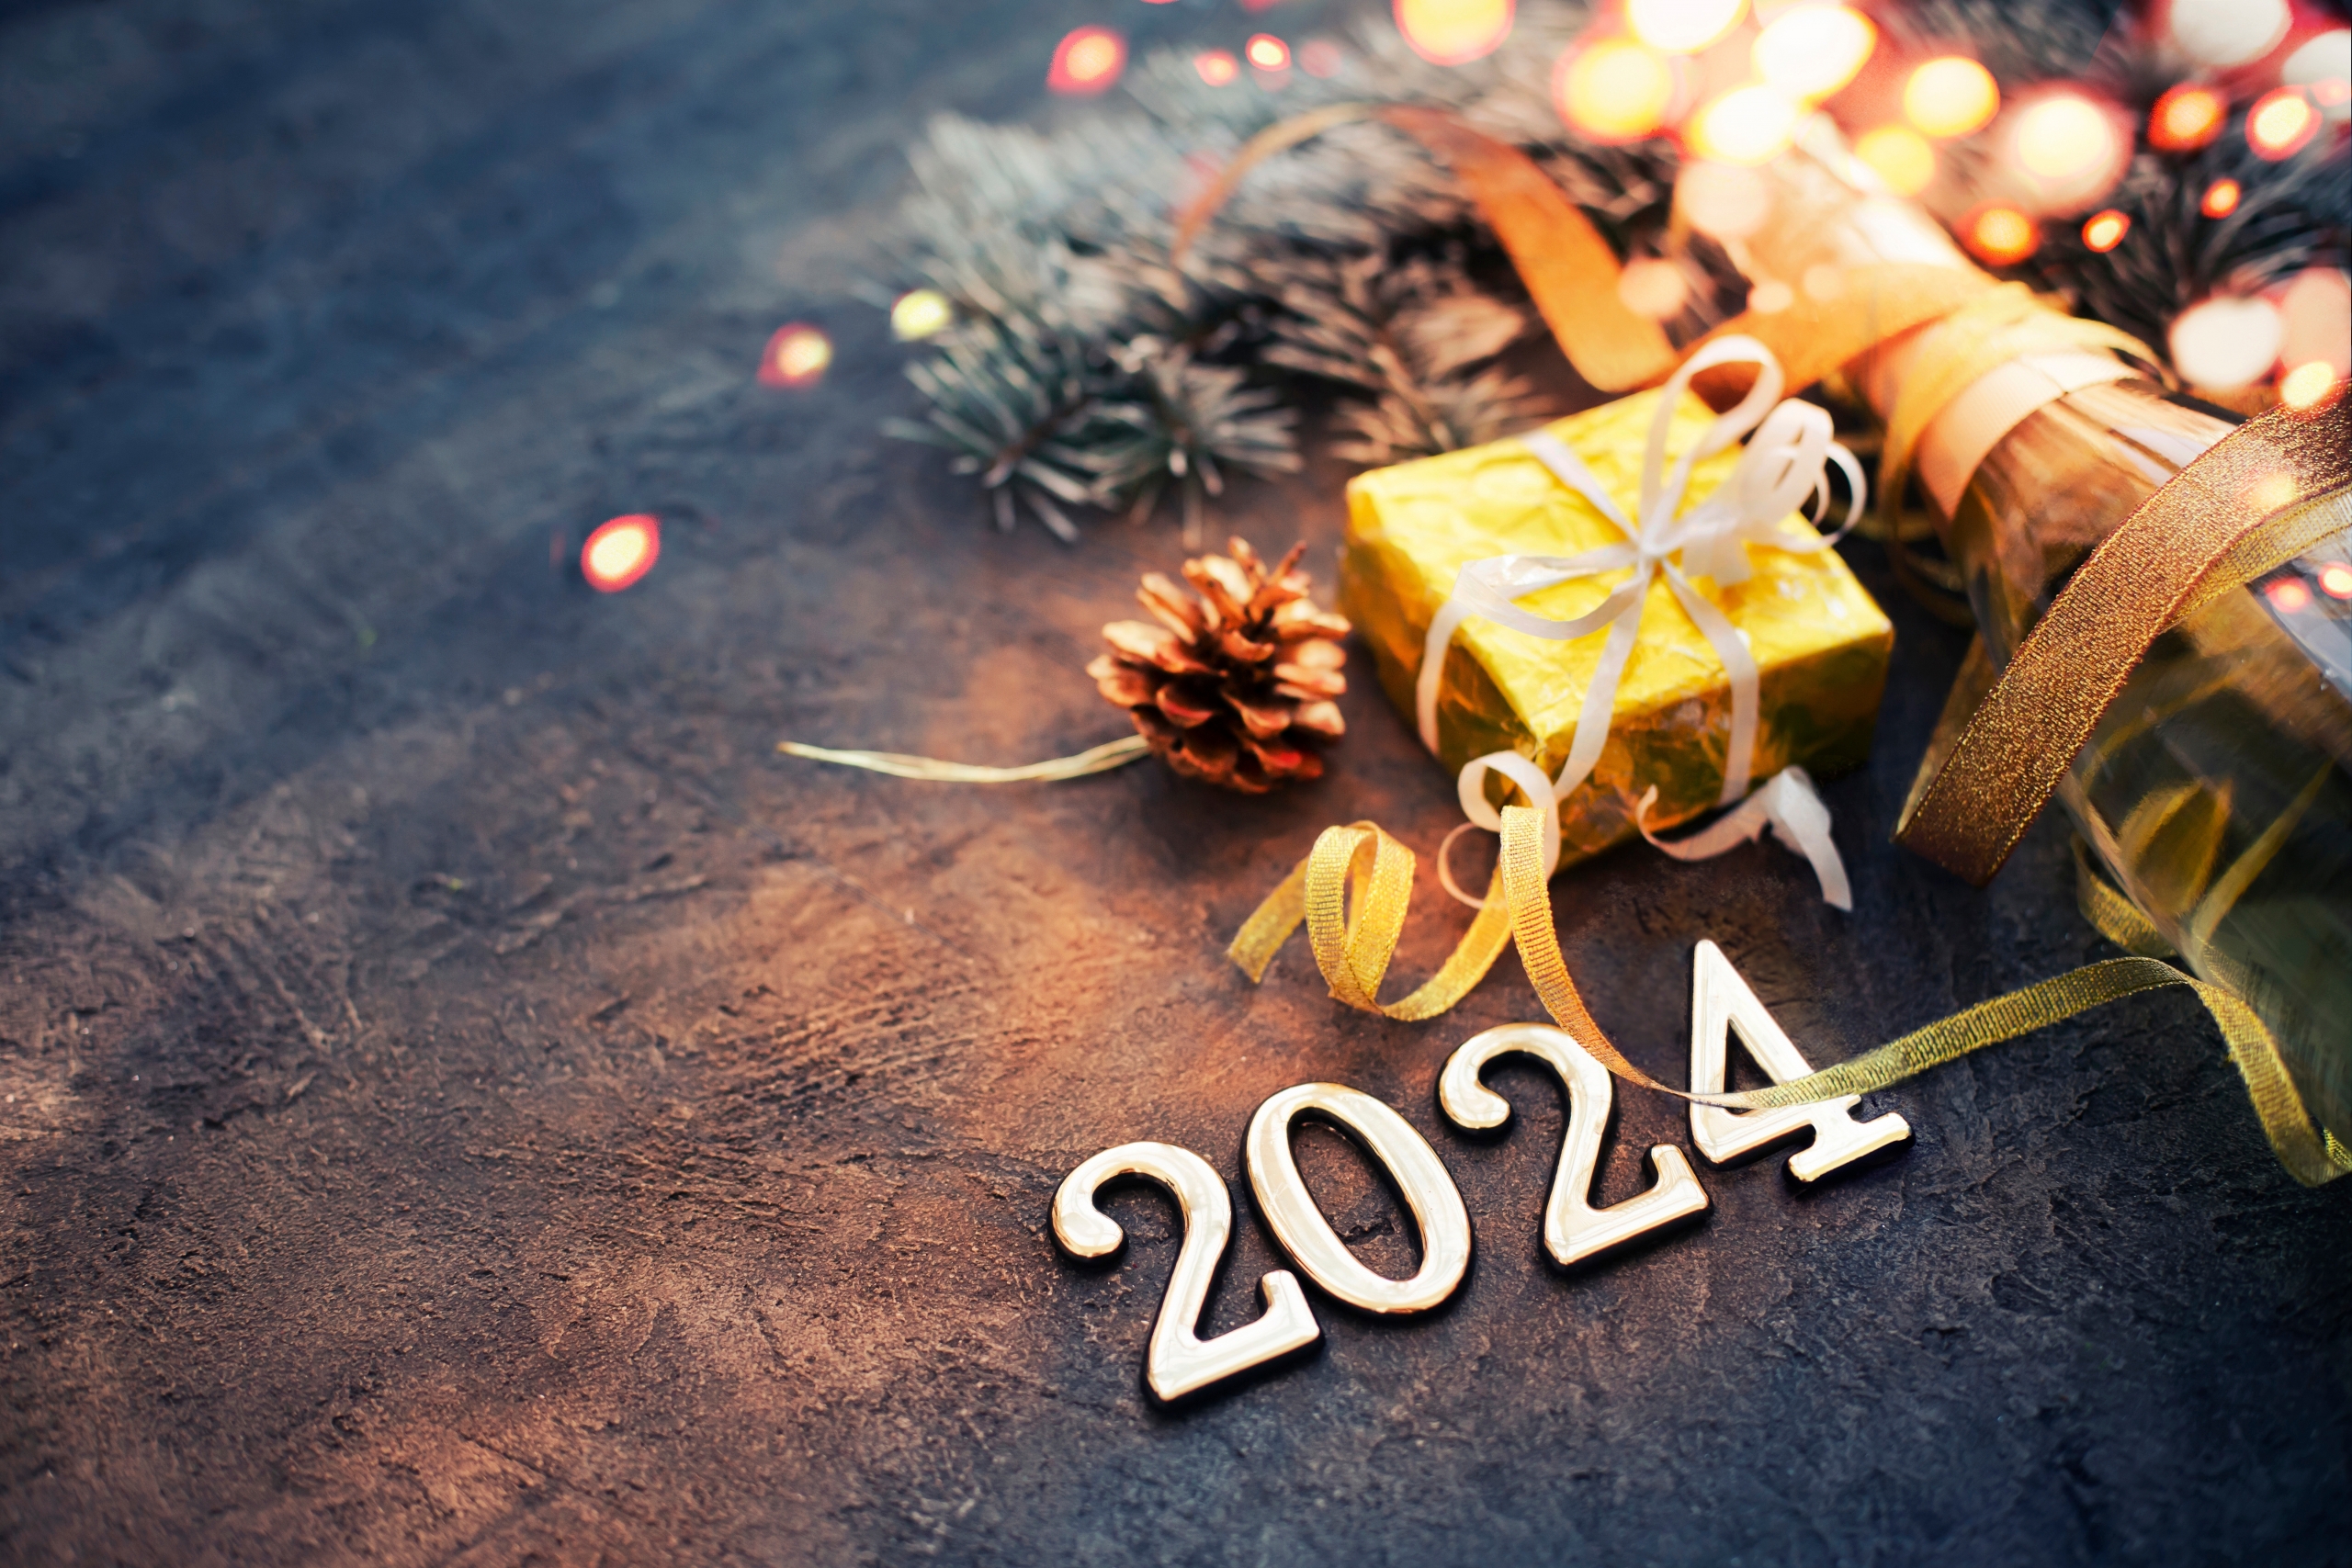 ⭐Mobicap vous présente ses meilleurs vœux pour 2024